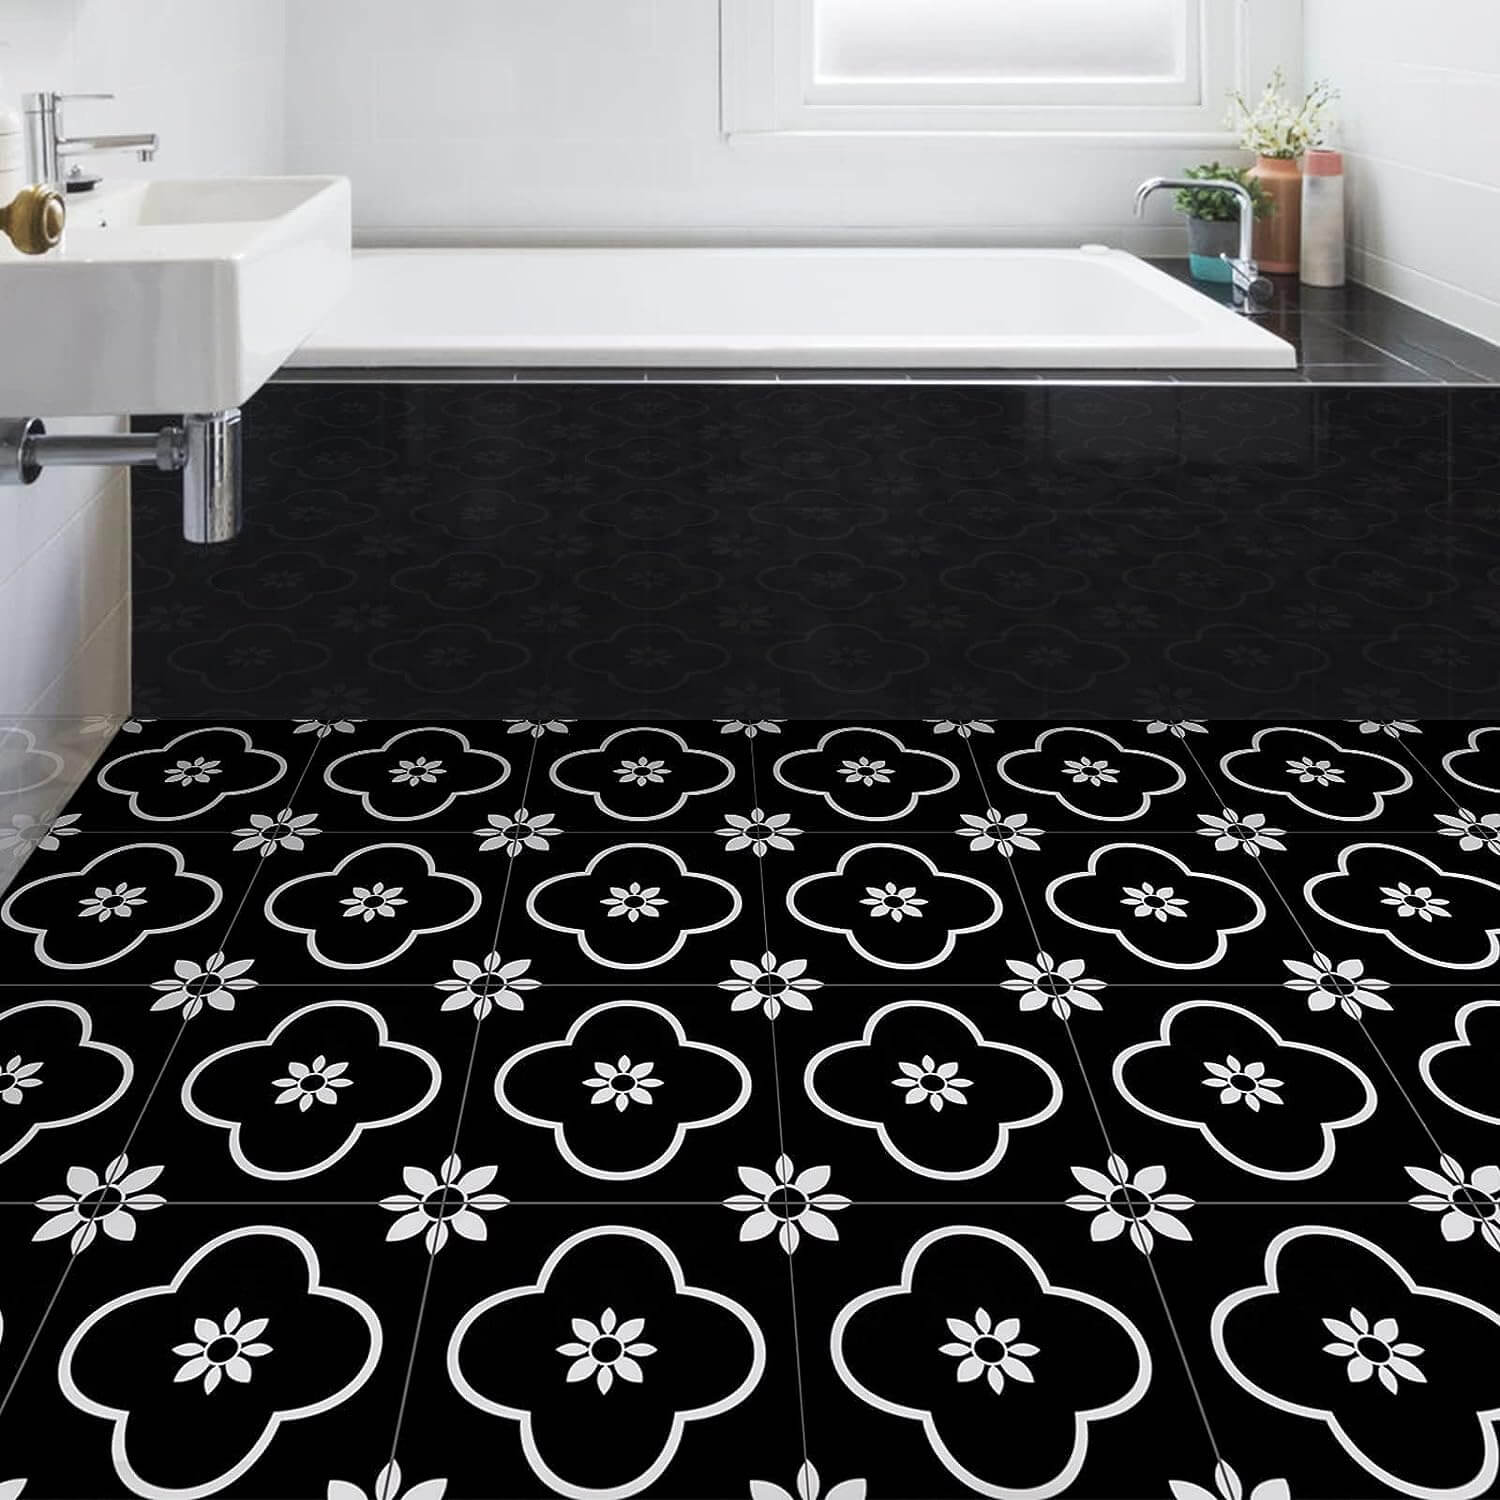 Black & White Floor tile